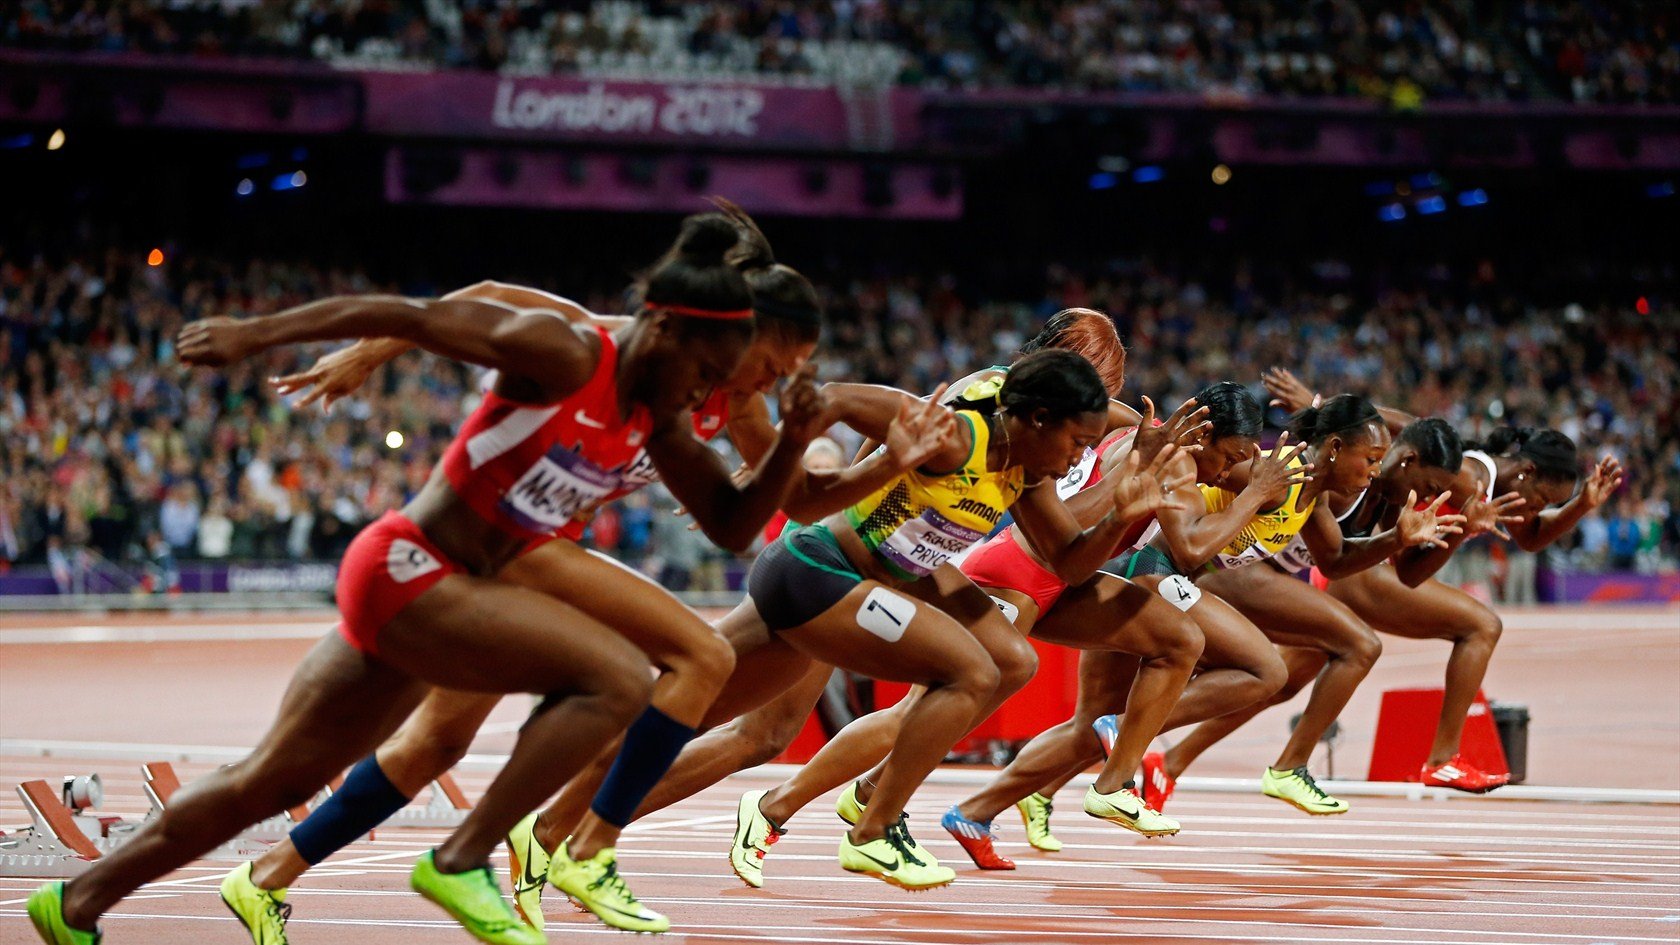 Спринт это бег на стадионе. Спринтерский бег спринт. Спринтерский бег в легкой атлетике. Легкая атлетика Олимпийские игры. Спринтерский бег женщины.